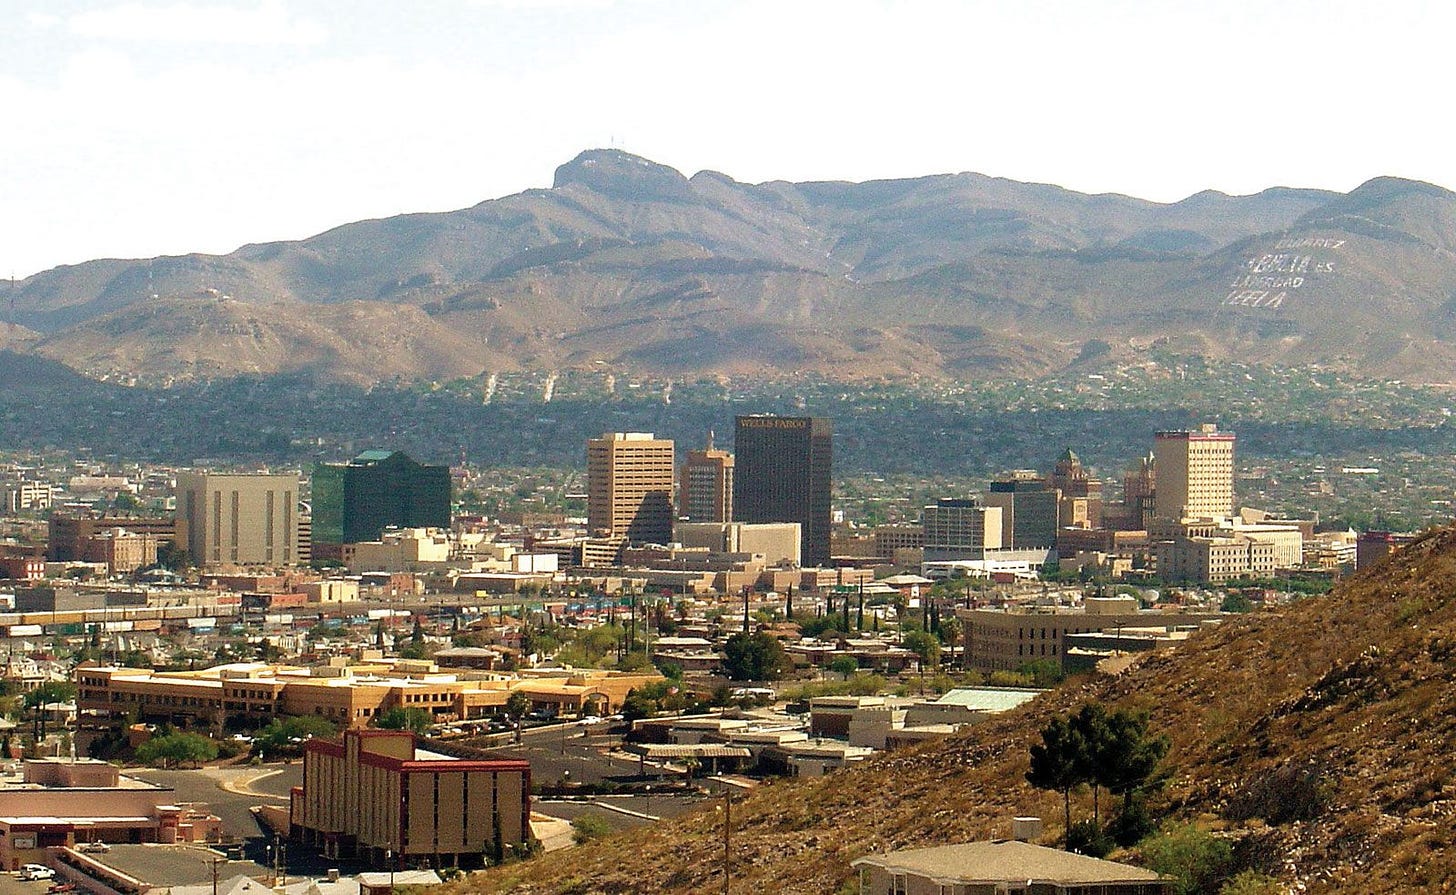 El Paso | History, Population, Map, & Facts | Britannica